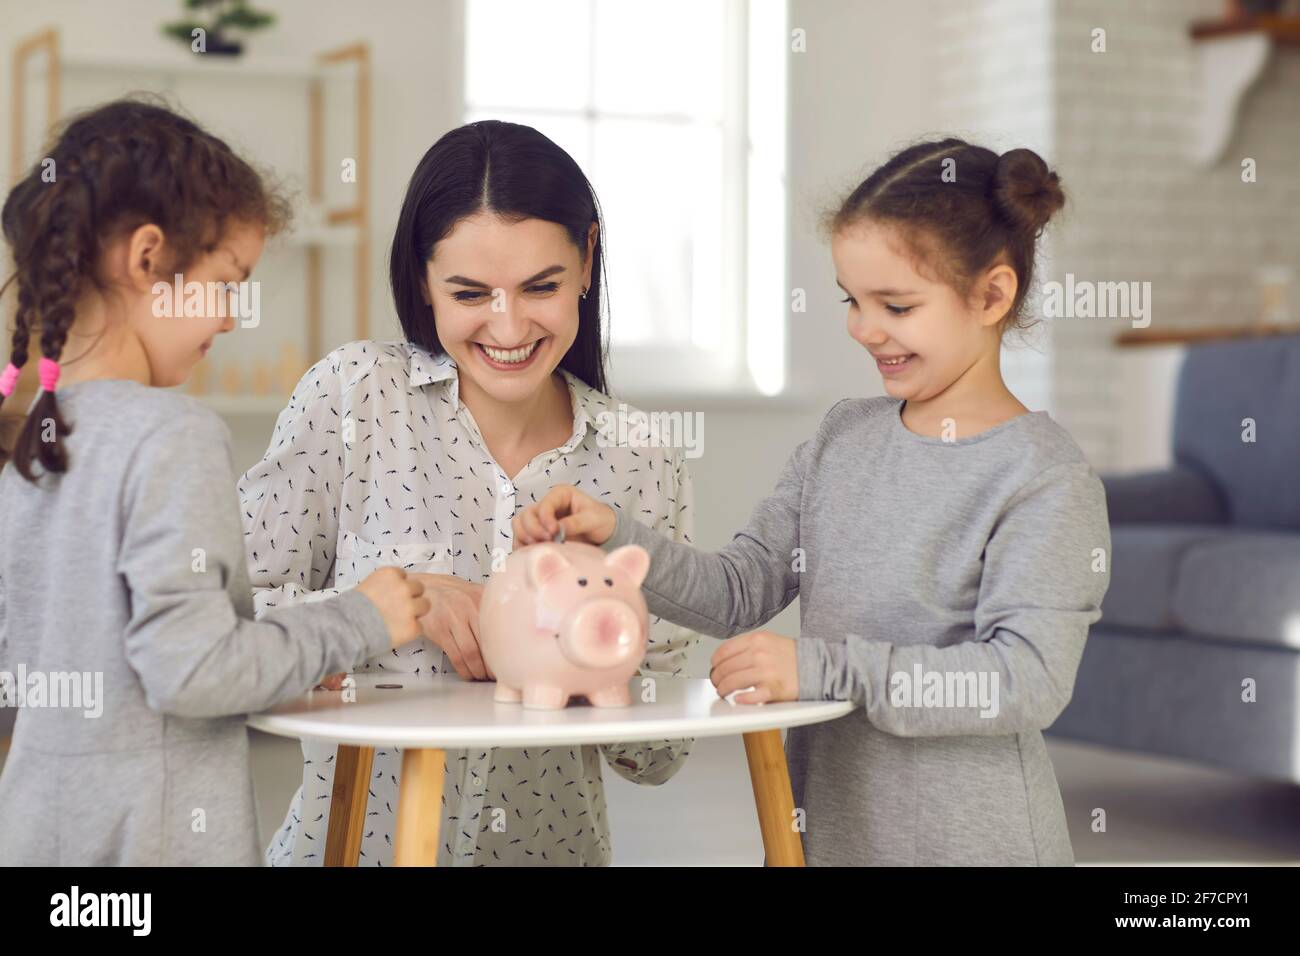 Glücklich lächelnd kleine niedliche Töchter in grauen Kleidern und jung Mutter legt Münzen auf das Sparschwein Stockfoto